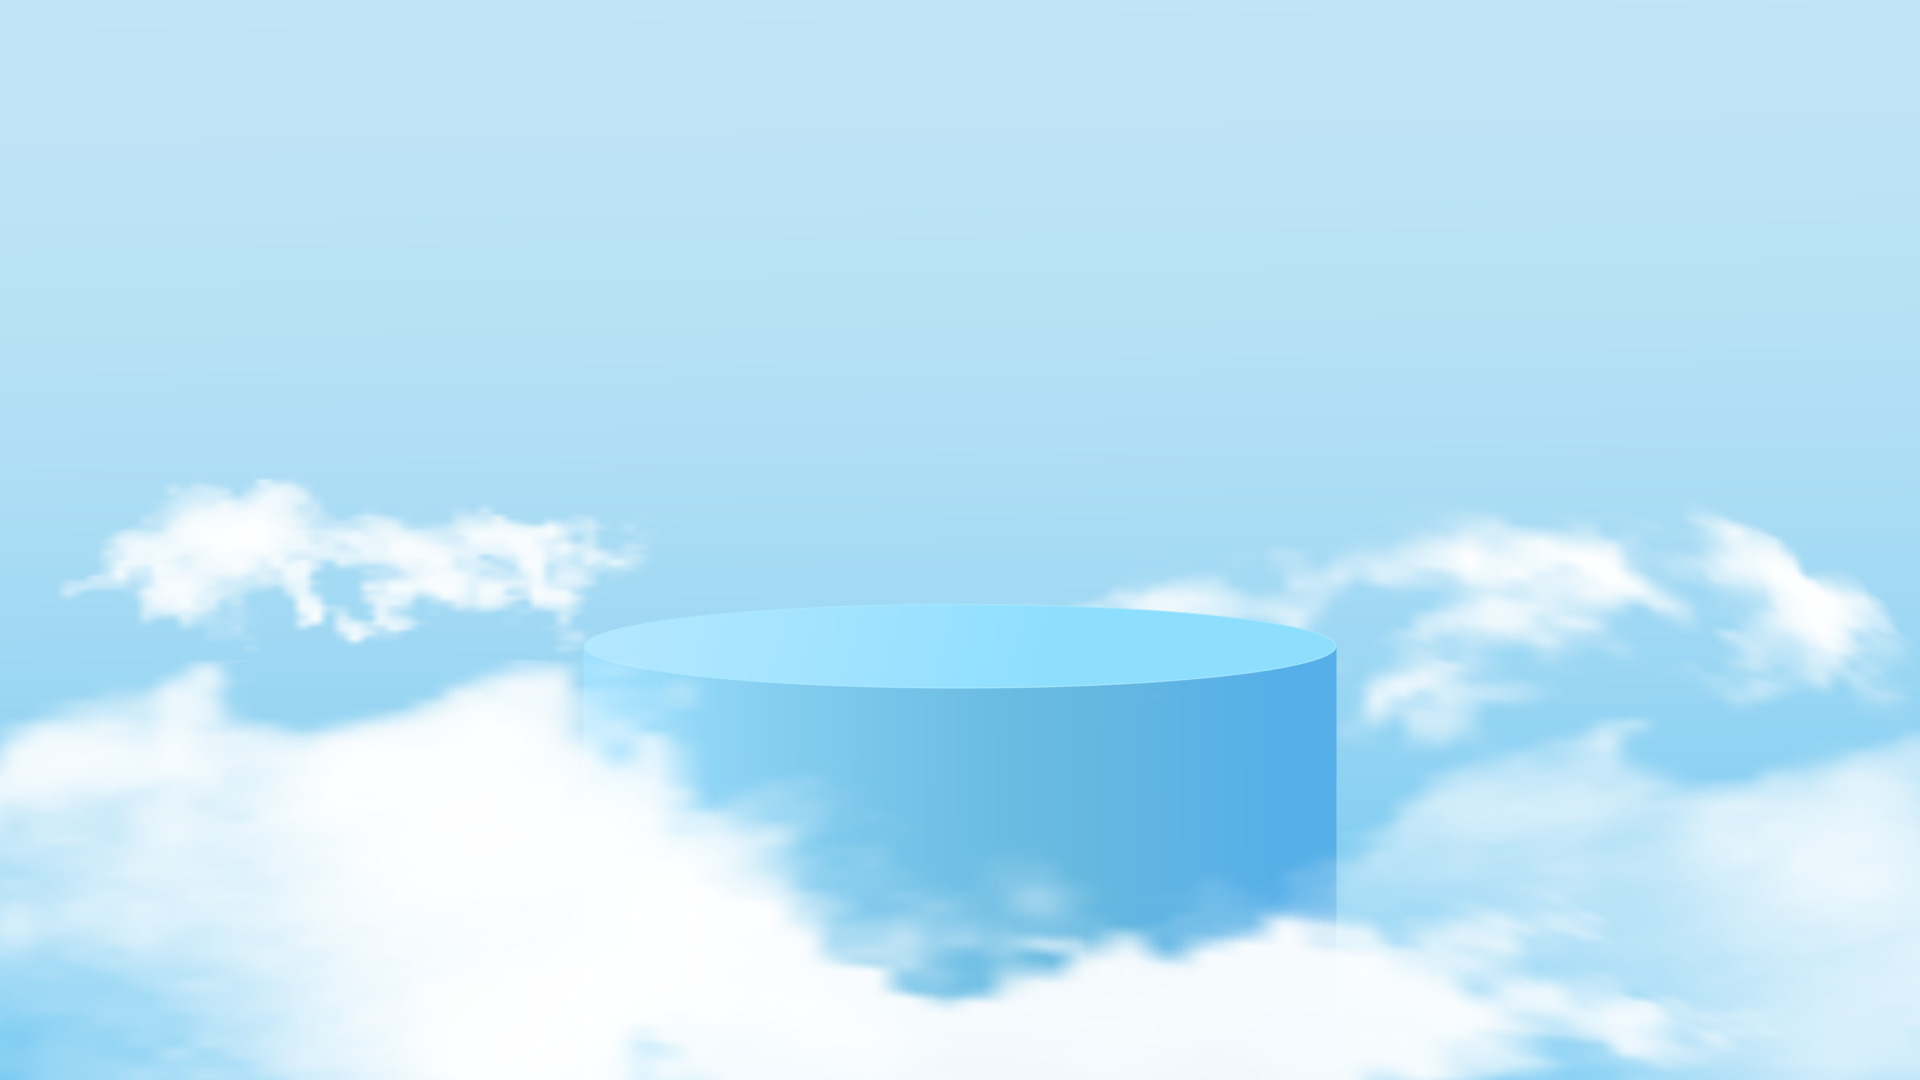 Vector nền 3d xanh da trời thật sự đẹp mắt với cách bố trí đám mây và bục phát biểu đơn giản nhưng hài hòa. Sự kết hợp này mang lại nét riêng cho nền 3D của bạn, tạo nên một không gian mới lạ và hiện đại. Hãy xem ngay hình ảnh để cảm nhận sự khác biệt này.